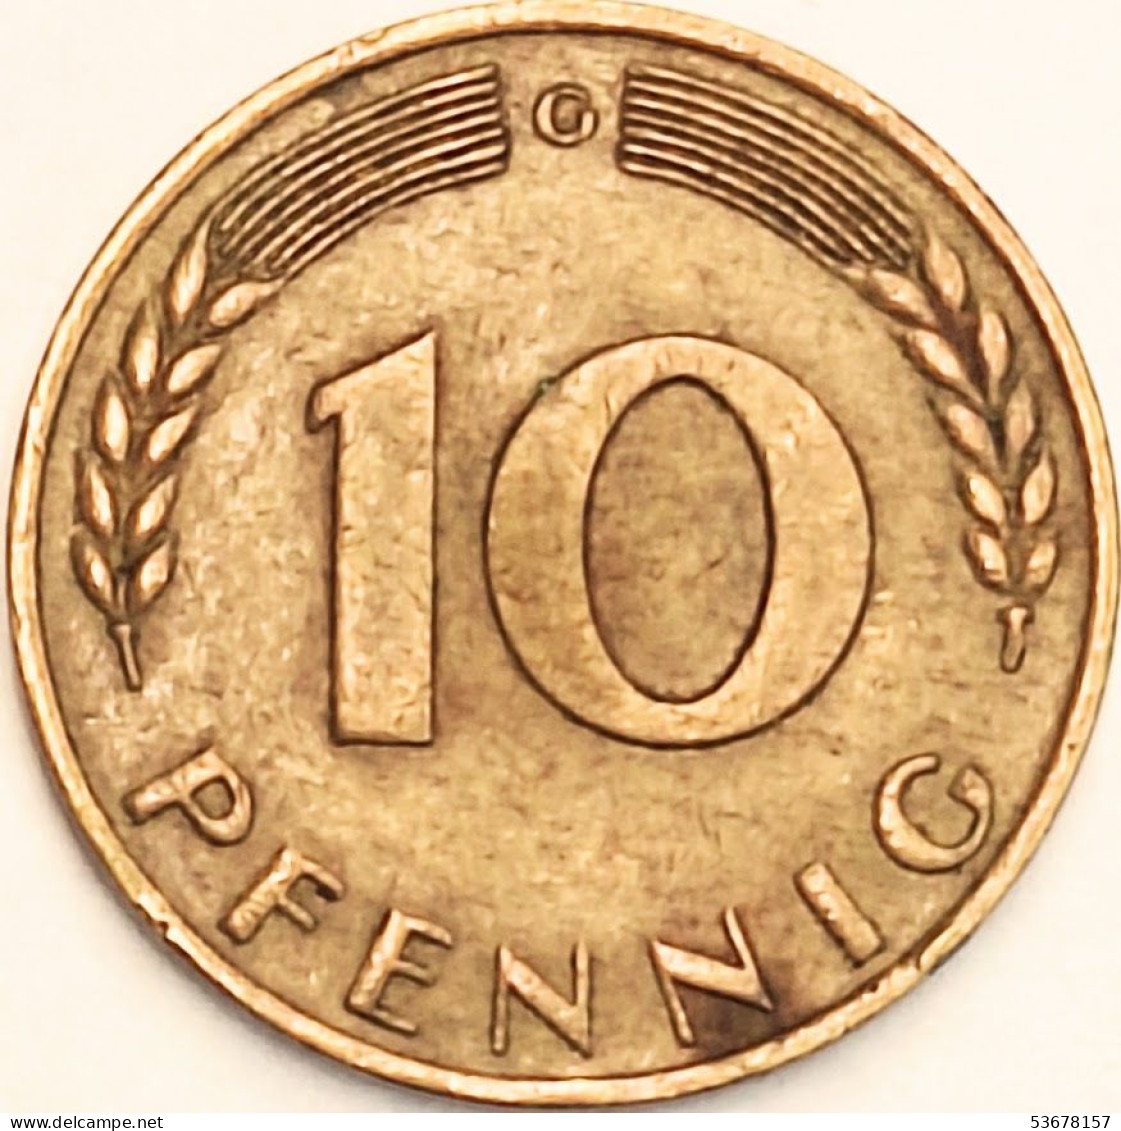 Germany Federal Republic - 10 Pfennig 1968 G, KM# 108 (#4633) - 10 Pfennig